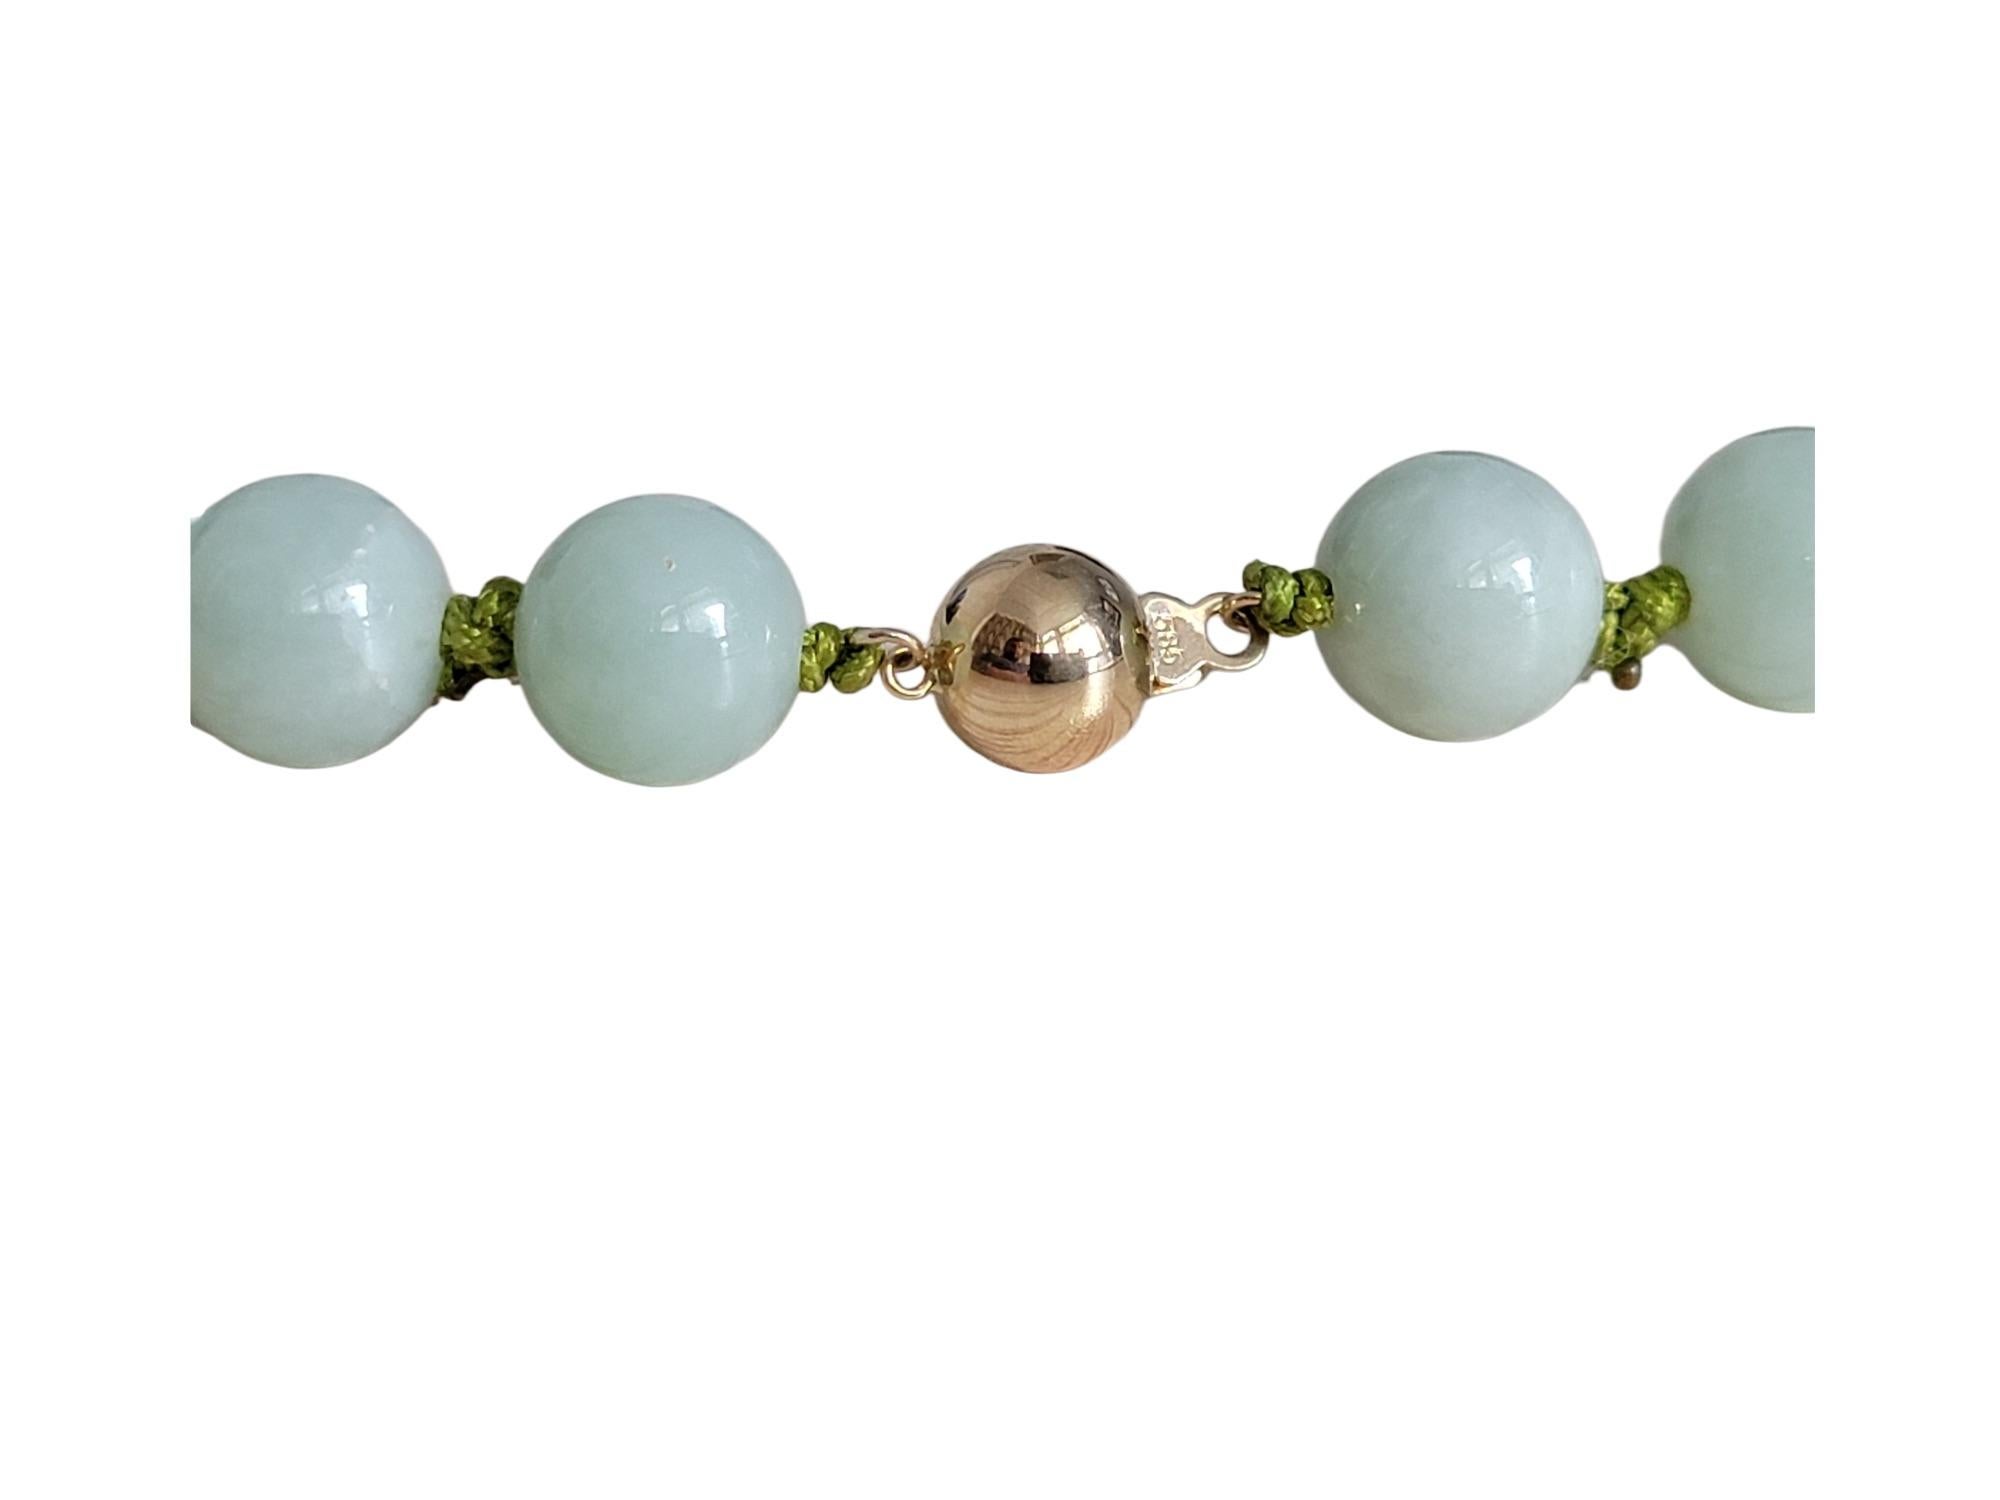 Kaiserliche grüne burmesische A-Jade Perlenkette (je 10 mm x 42 Perlen) 10002

Die 